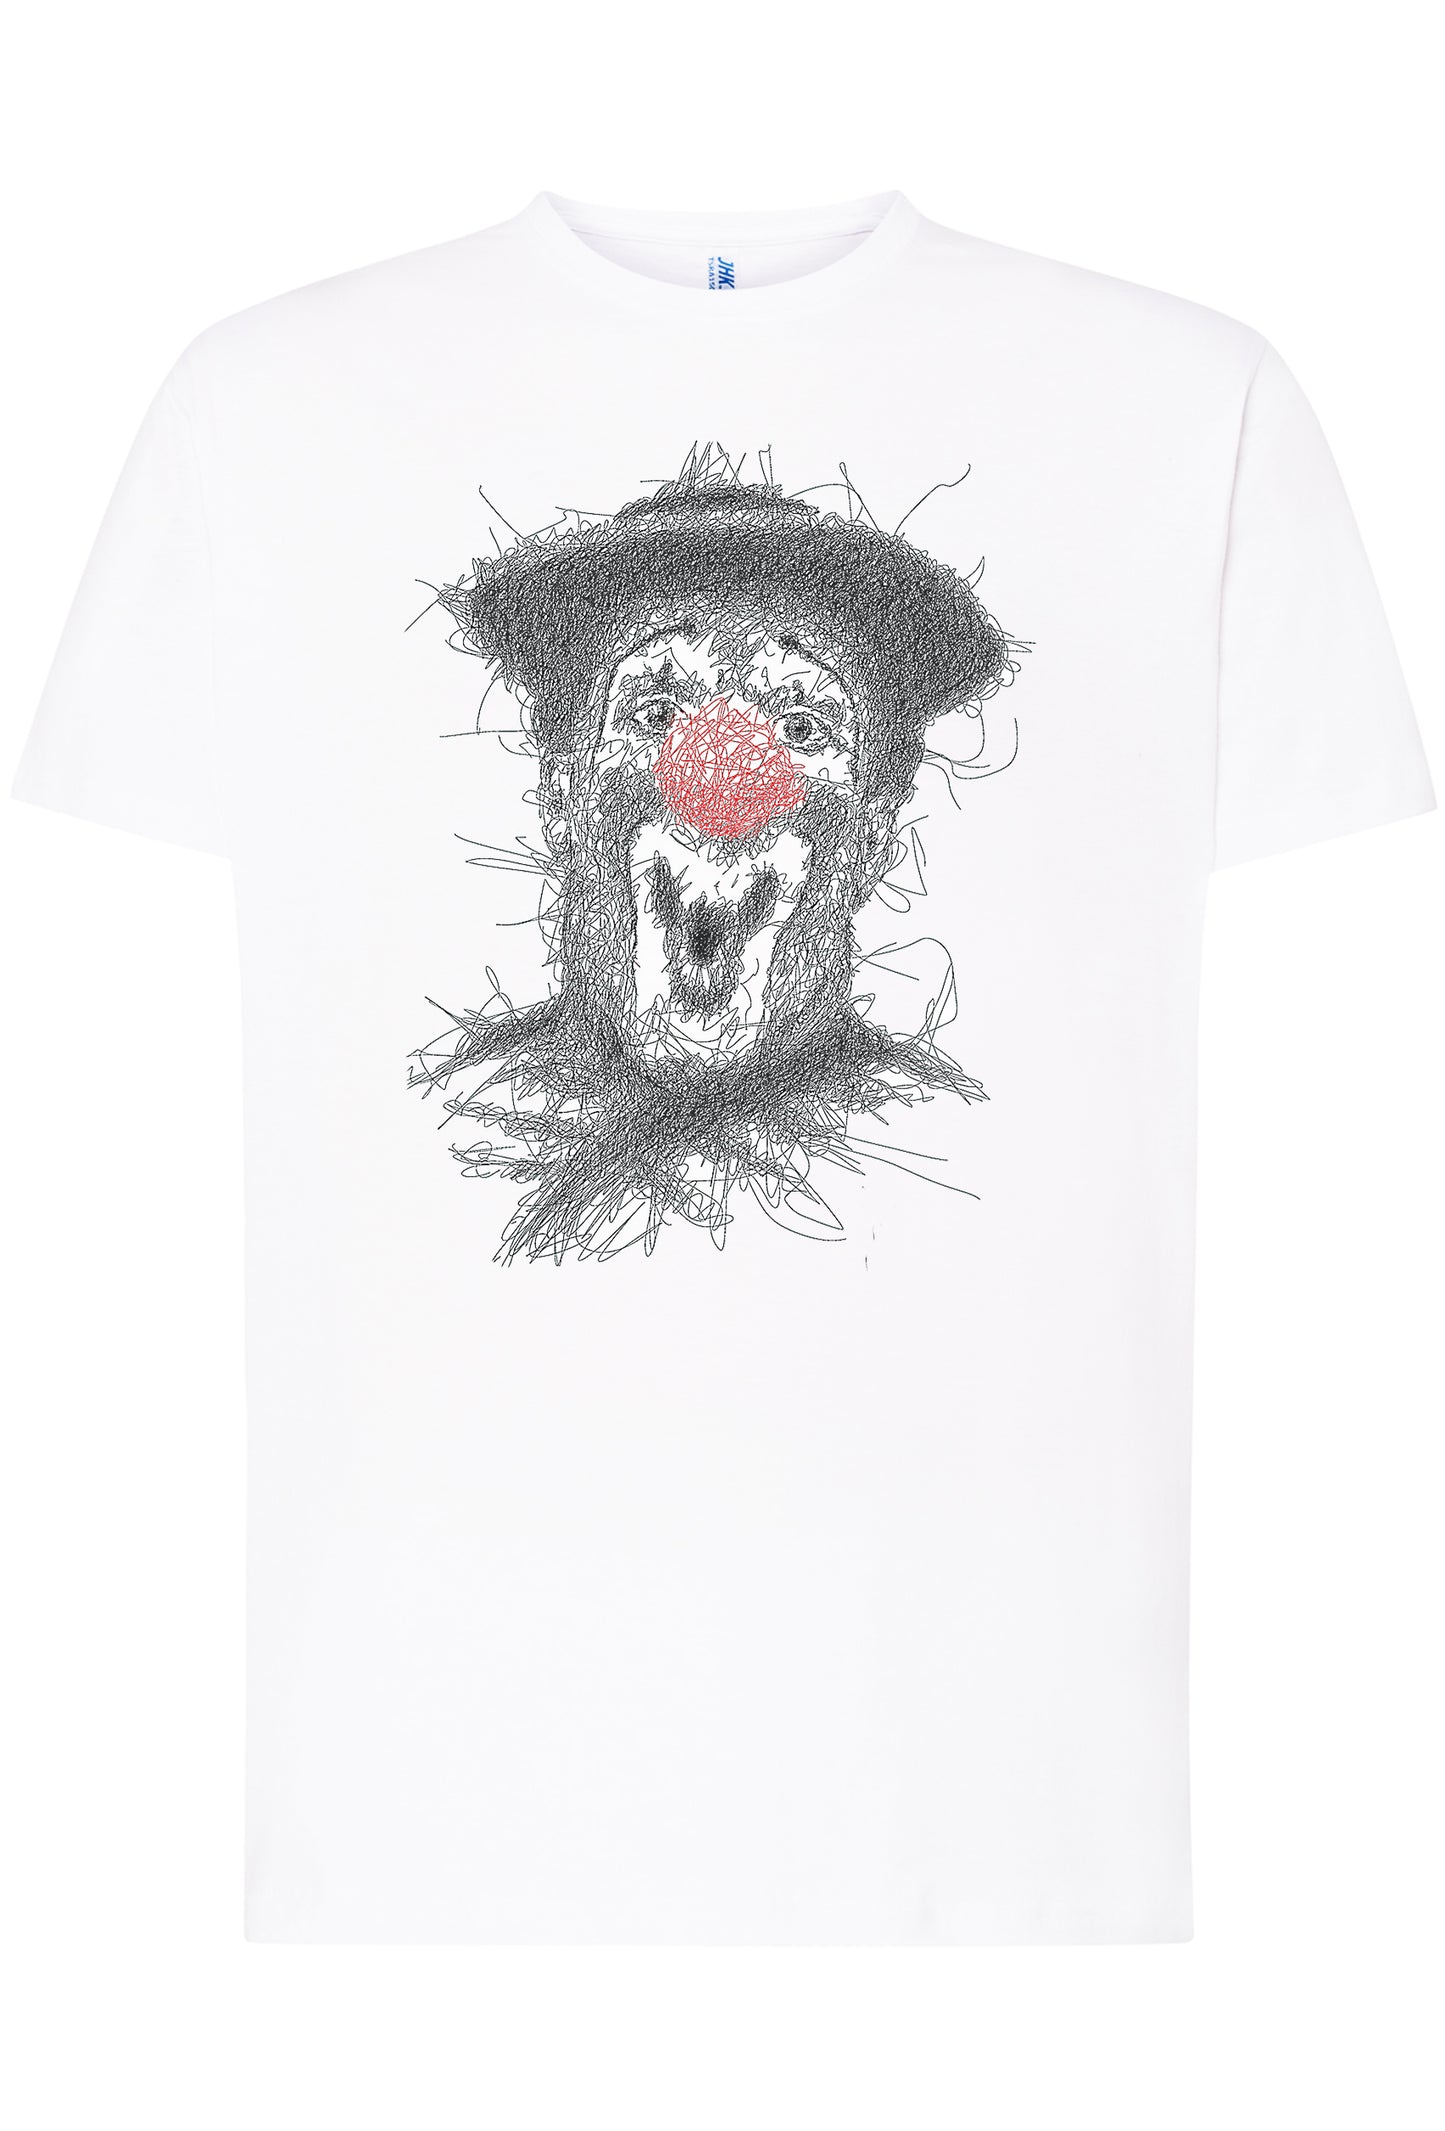 Clown Naso rosso Stilizzato Color 18-65 T-shirt Urban Men Uomo 100% Cotone Pettinato JK